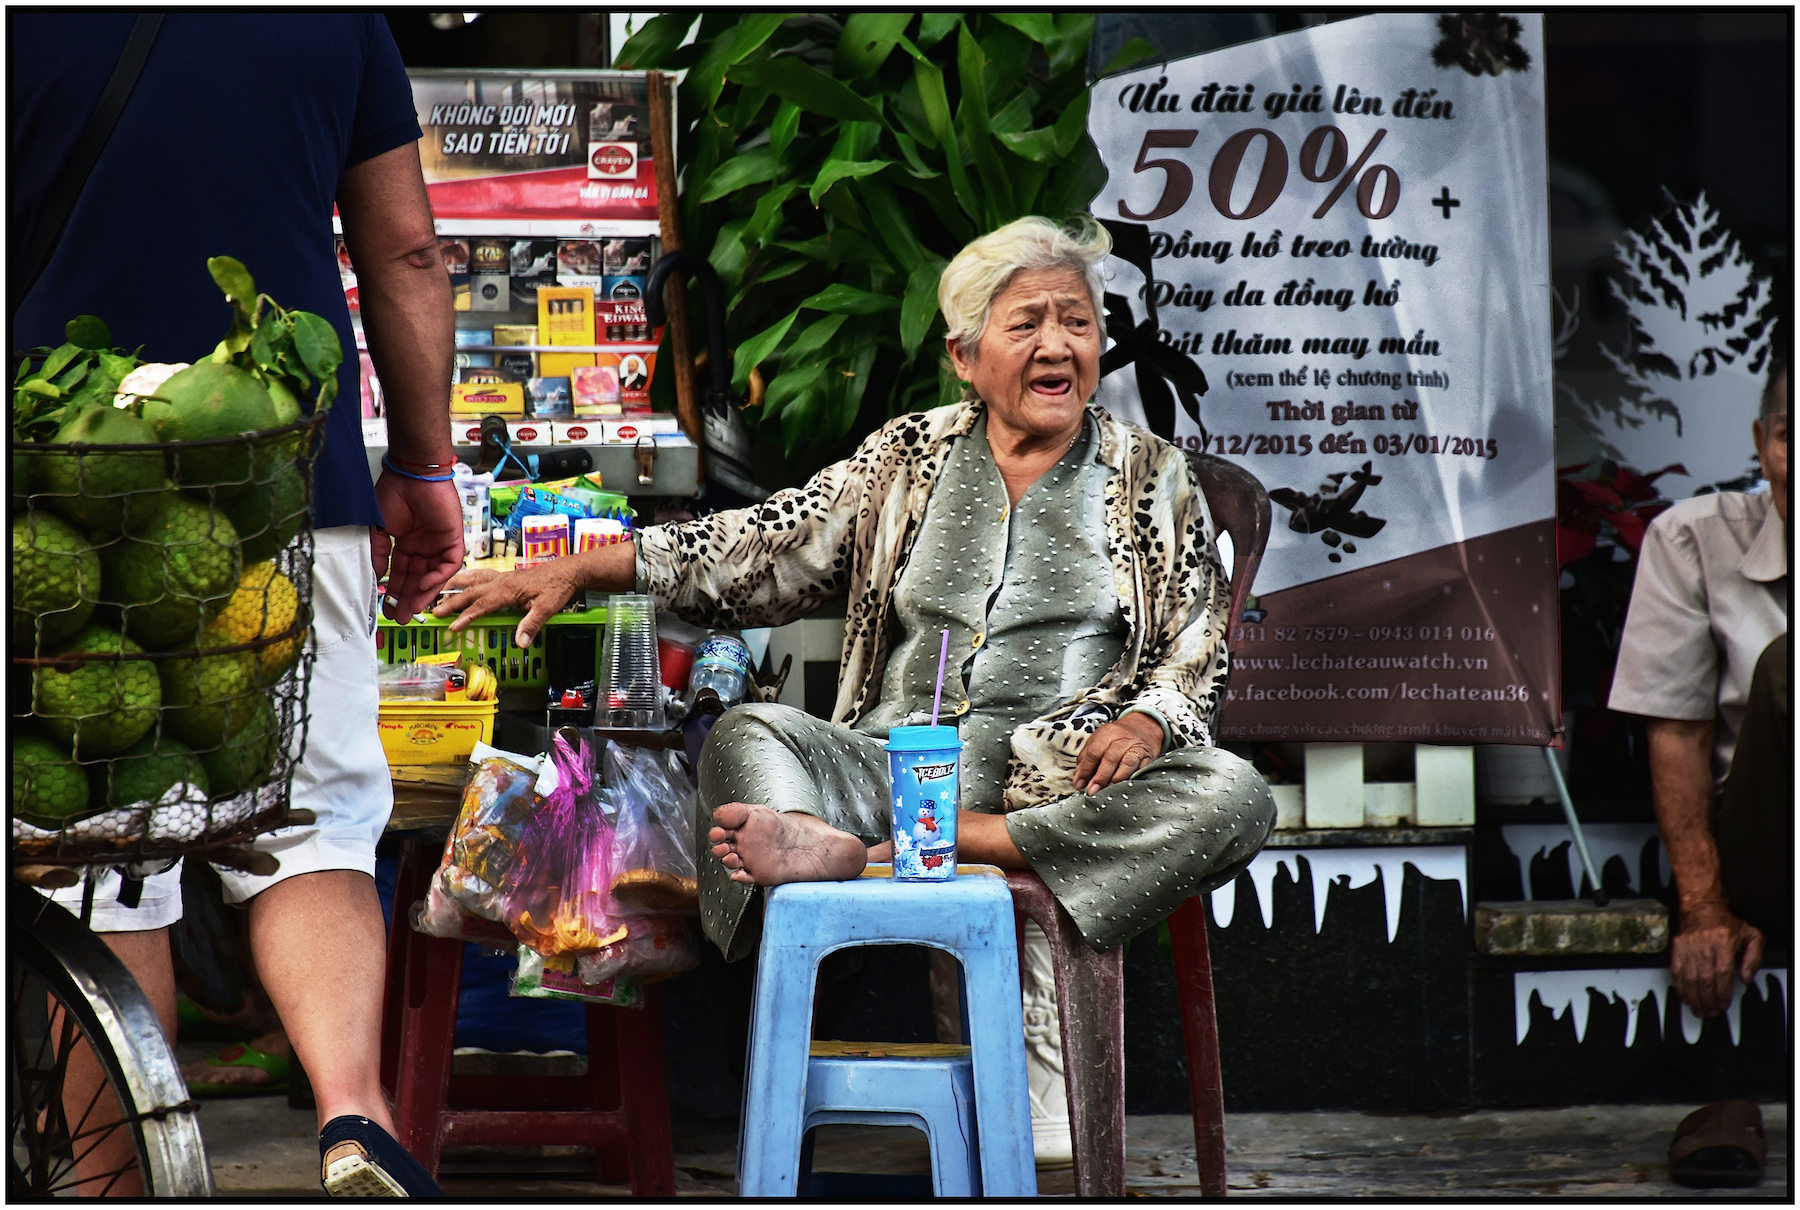  Street Vendor, Saigon/HCMC, Dec. 2015. #5204 